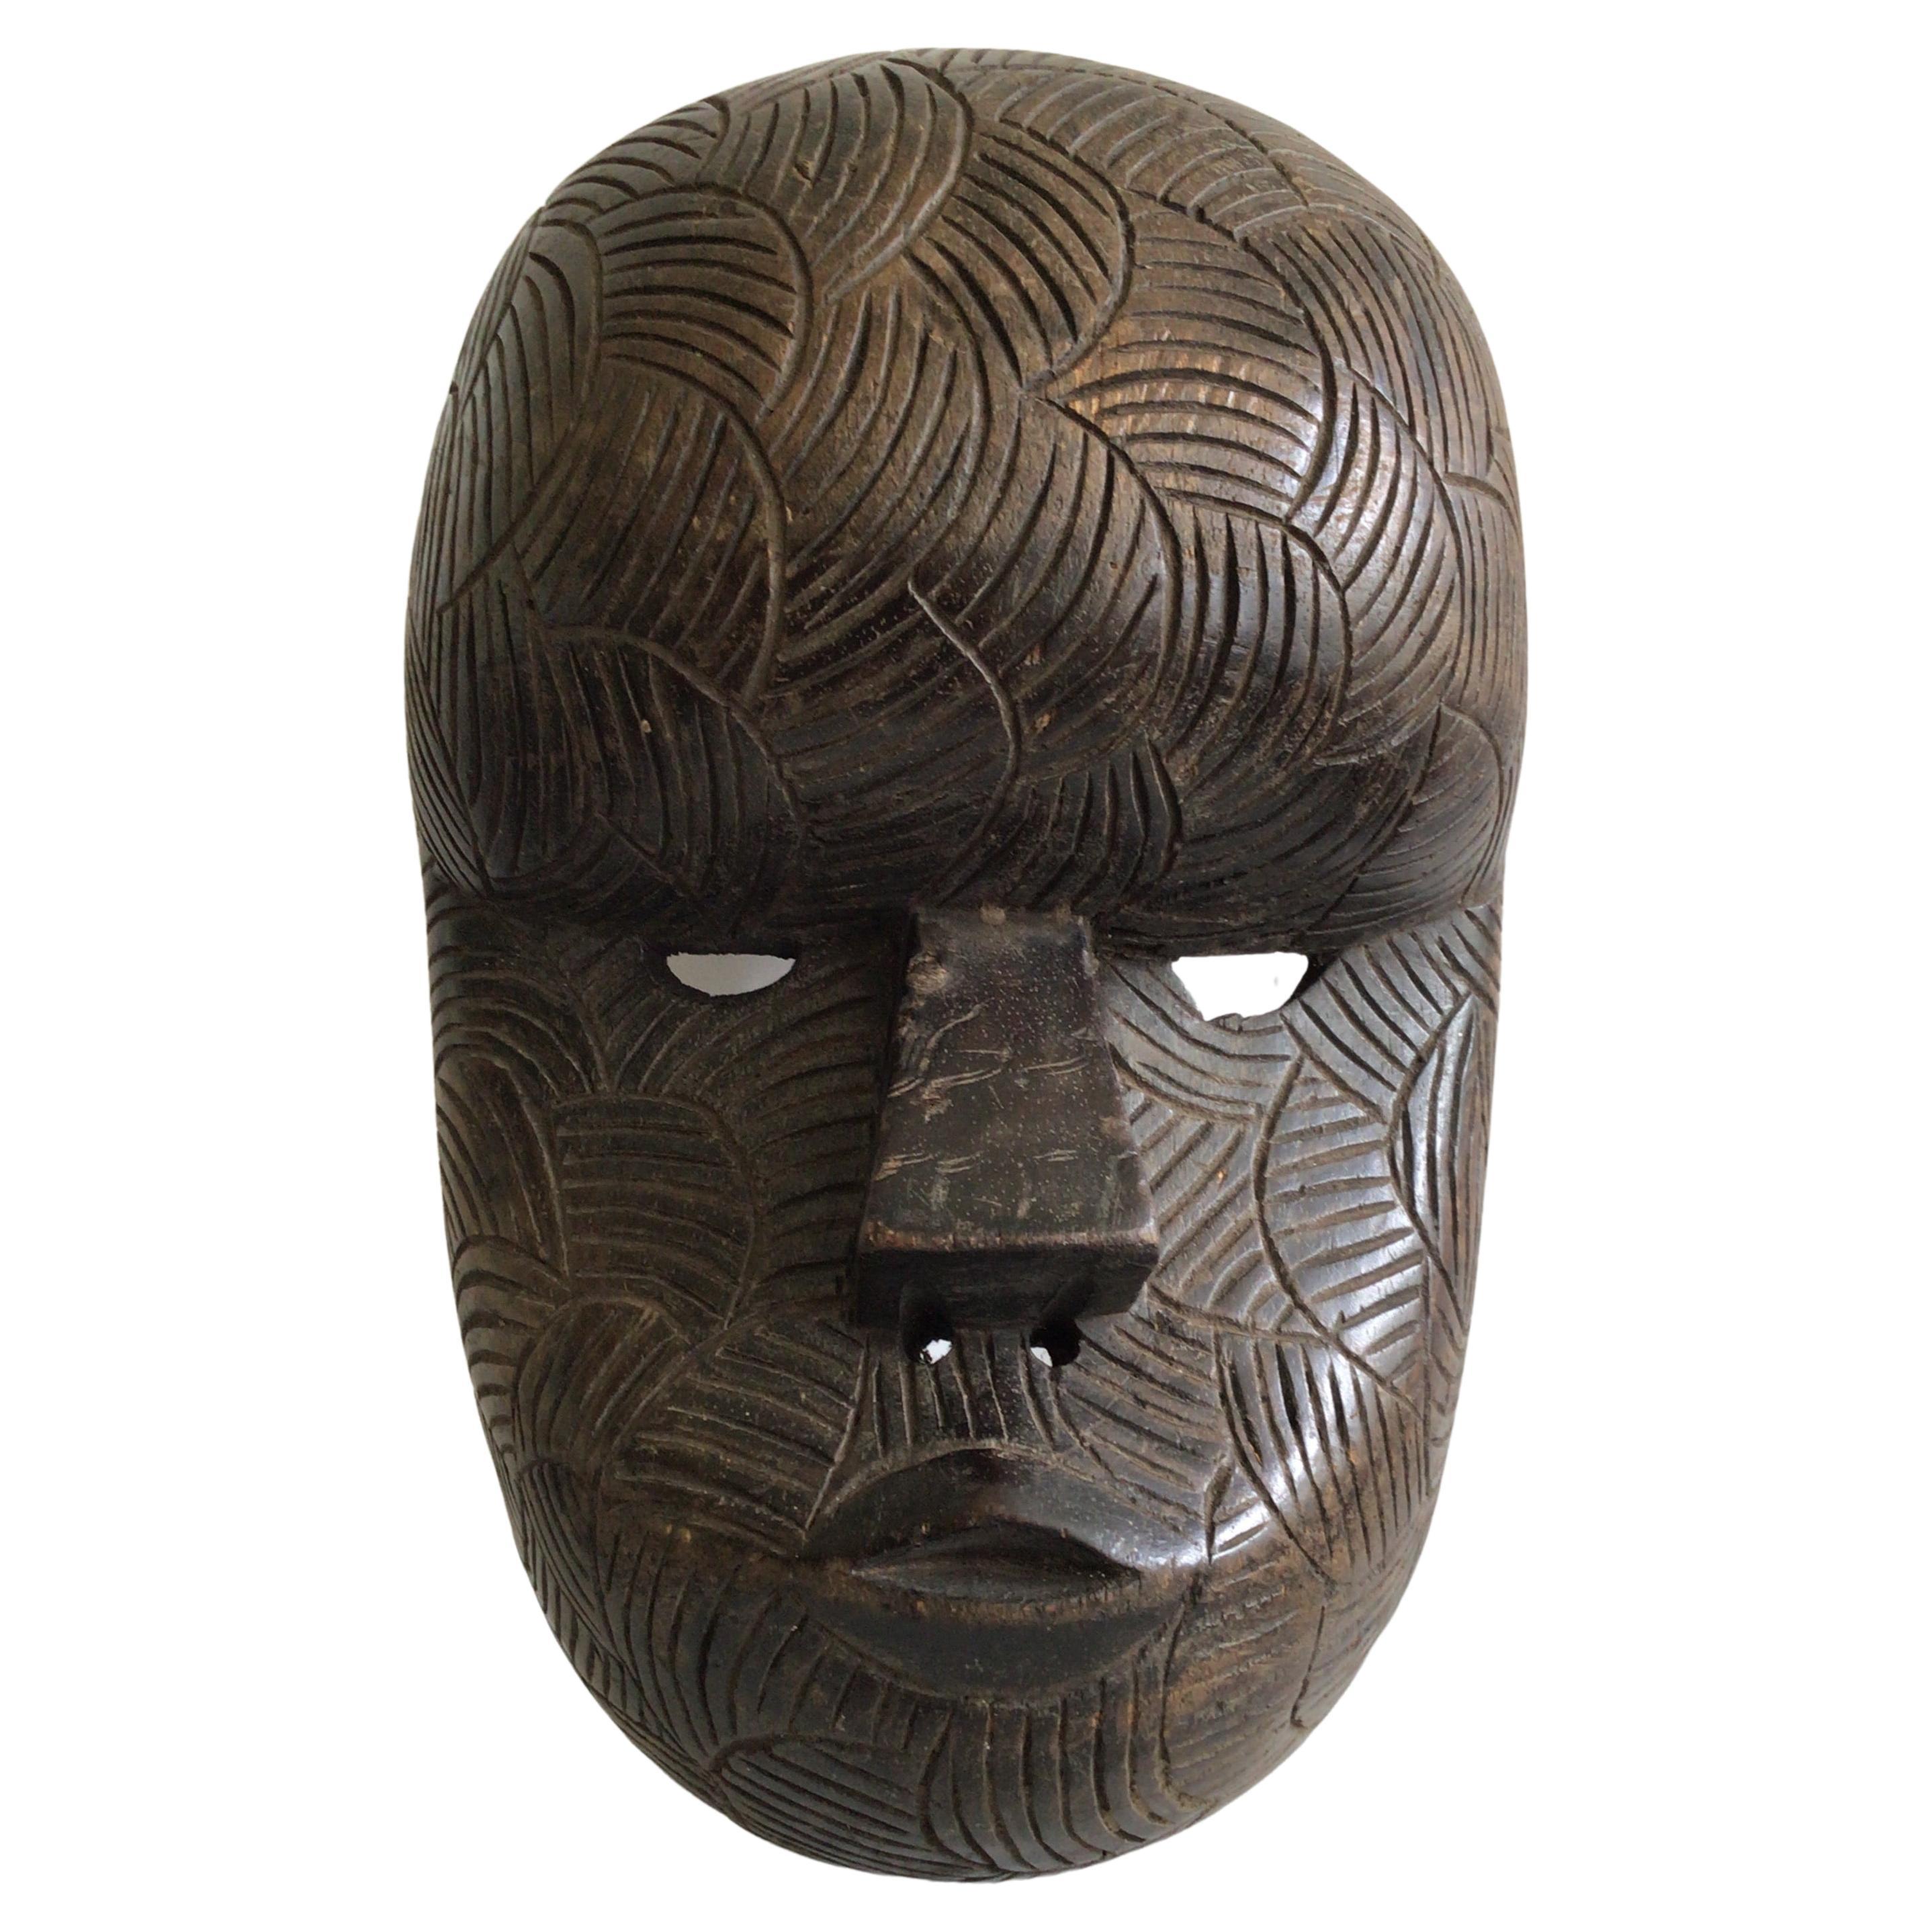 1950er Jahre geschnitzt Wood Afrikanische Maske